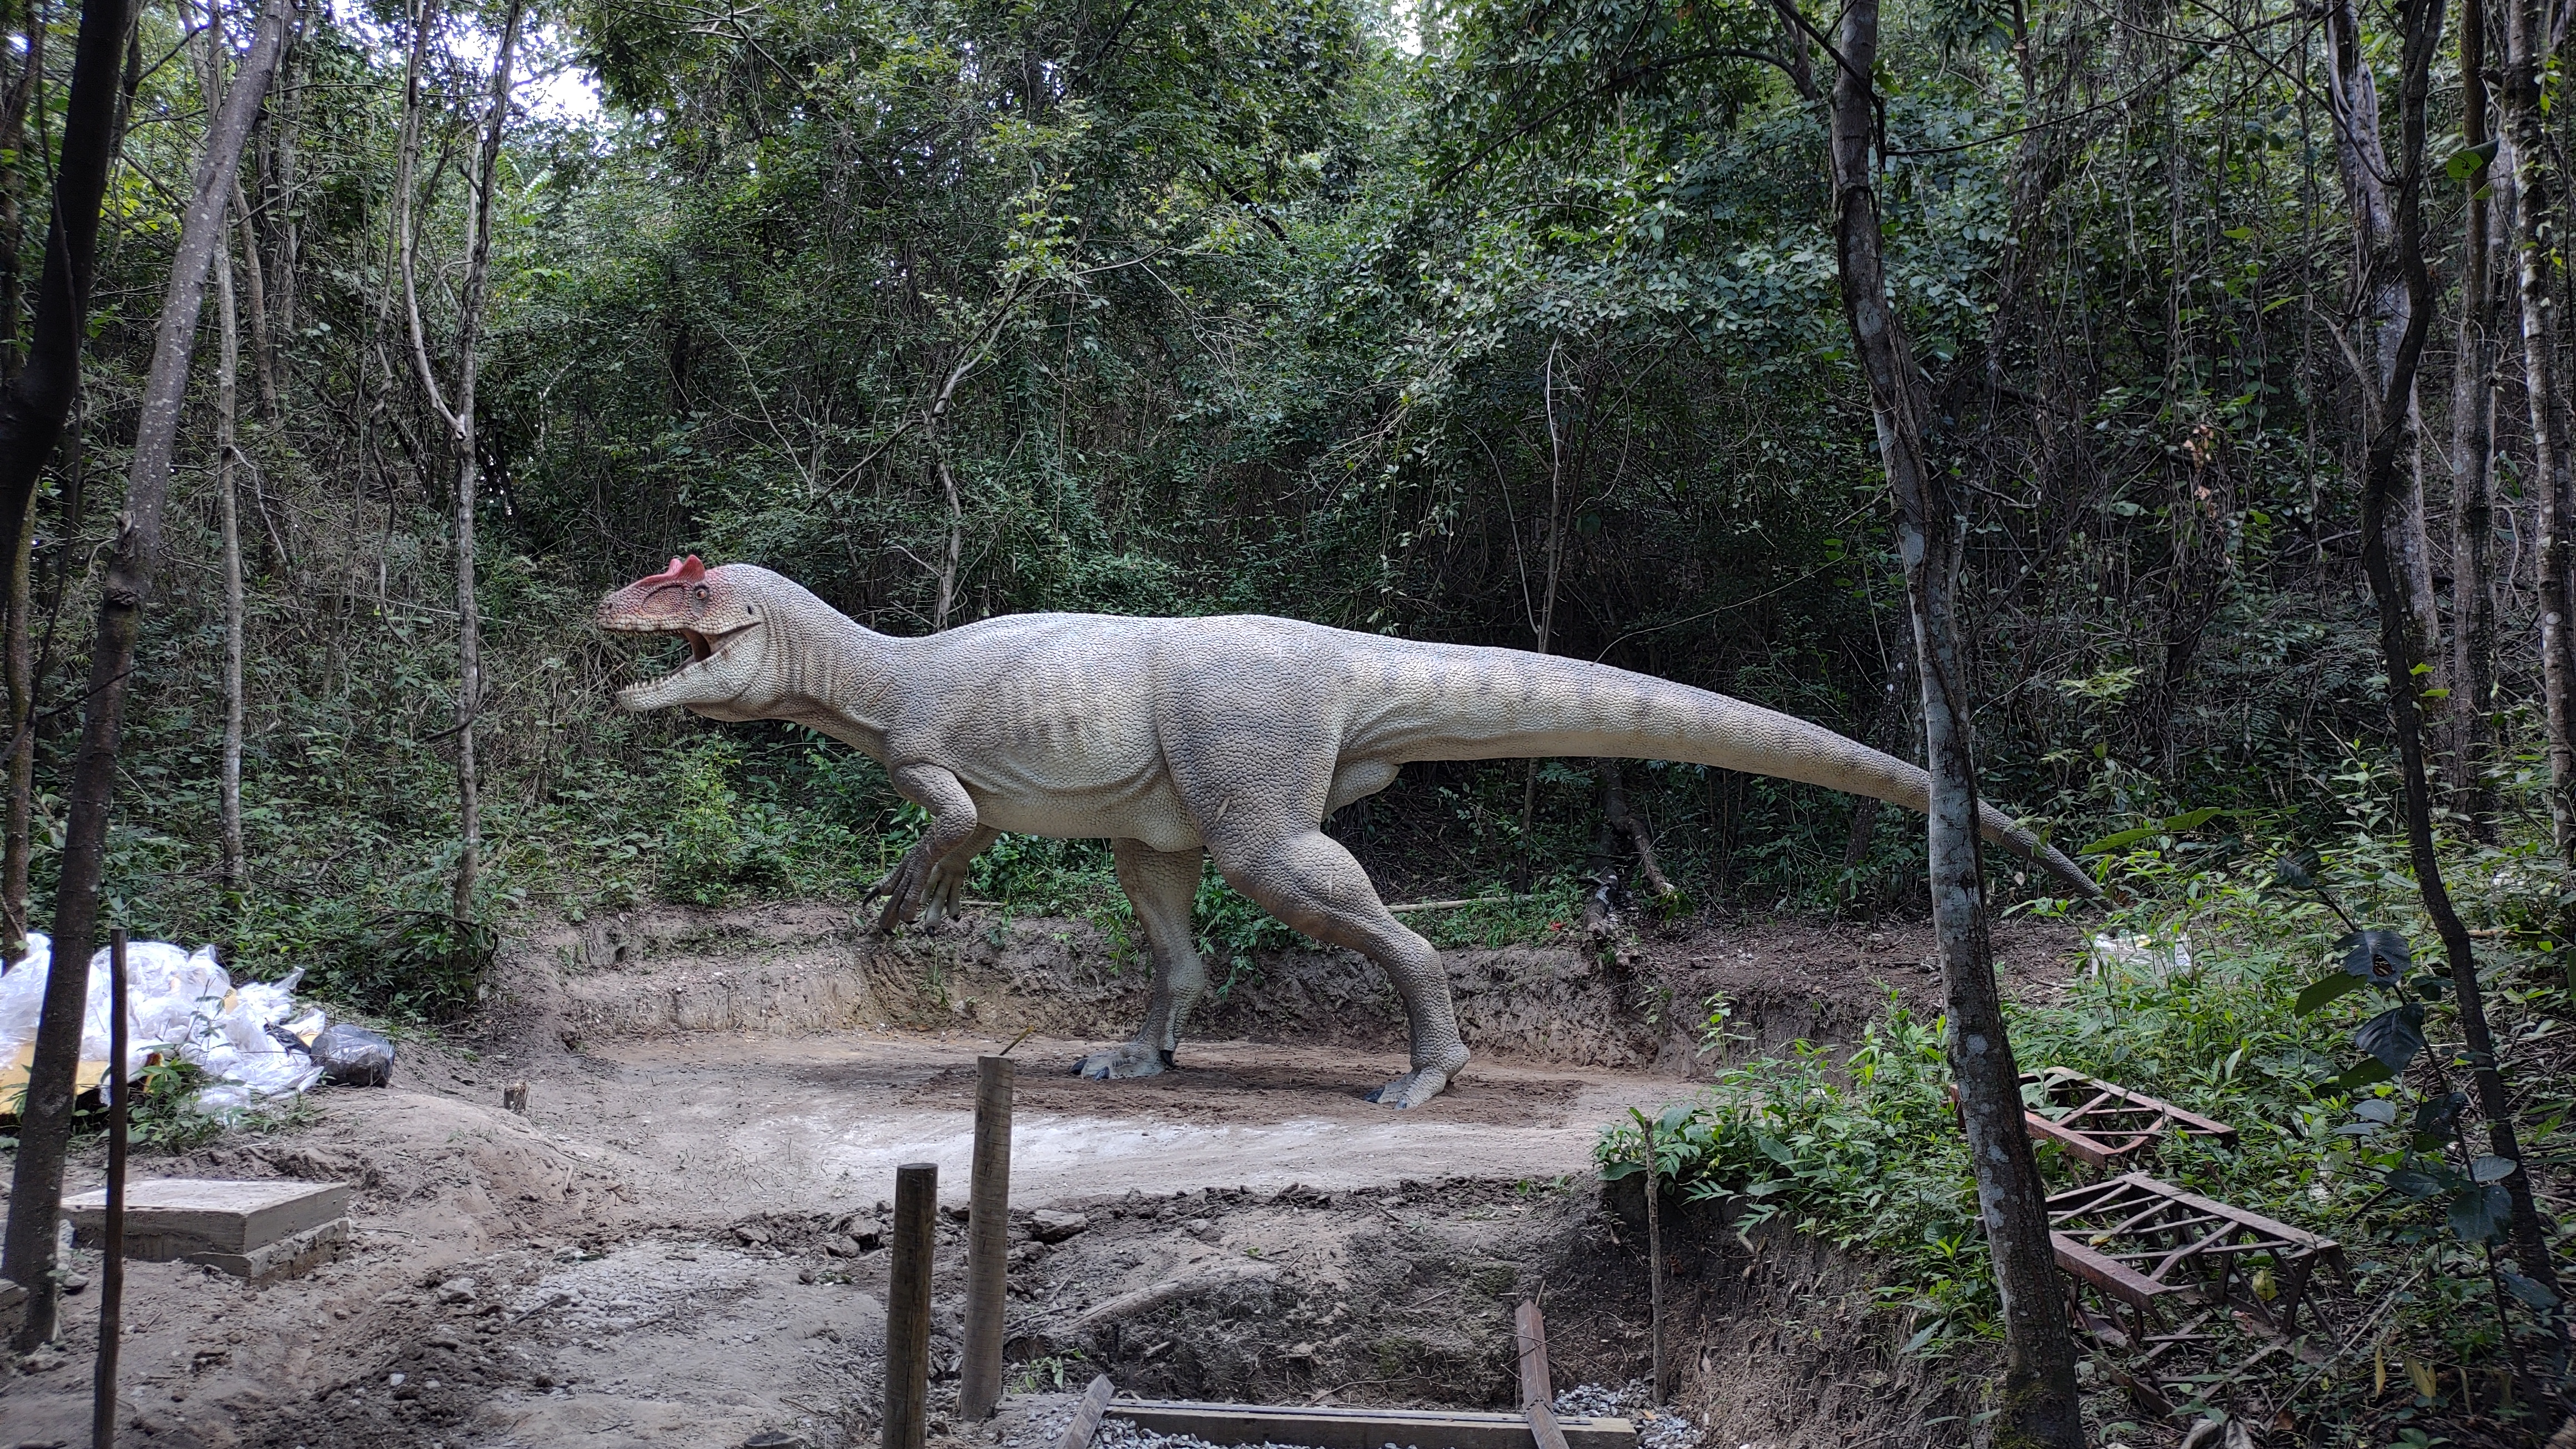 Escultor da região produz dinossauros gigantes no quintal de casa - GMC  Online